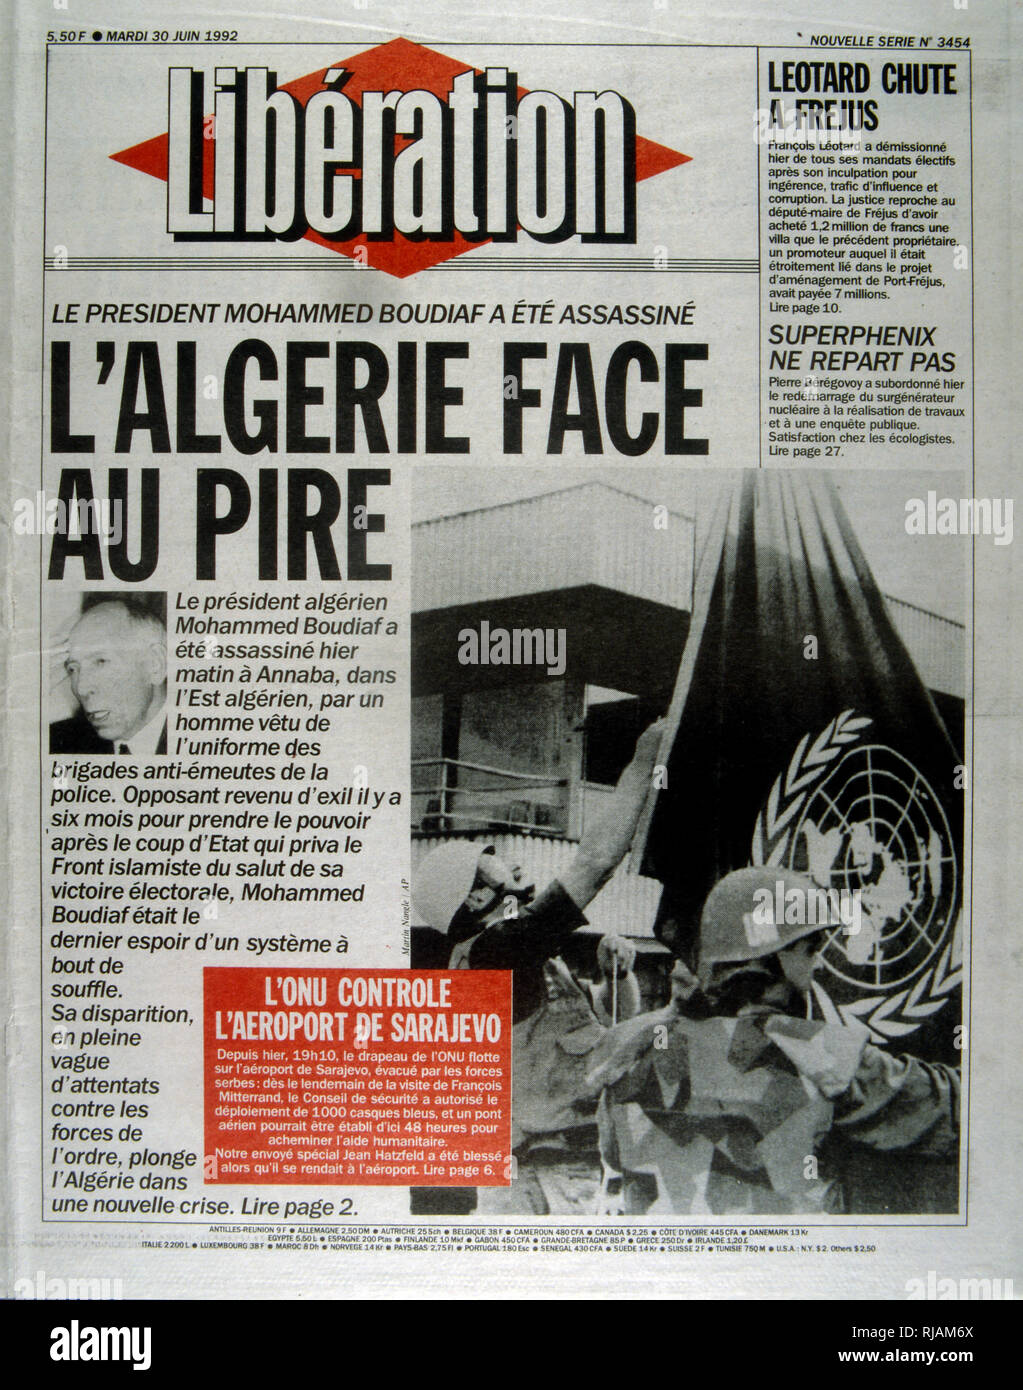 Vordere Seite der französischen Zeitung 'Befreiung' nach der Ermordung des algerischen Präsidenten Boudaif im Jahre 1992. Mohamed Boudaif (1919-1992), algerischer politischer Führer. Im Februar 1992, nach einem 27-jährigen Exil, das Militär lud ihn wieder Vorsitzender des Hohen Rates der Staatlichen (HCE) von Algerien, ein Aushängeschild für die Militärjunta zu werden. Am 29. Juni 1992, als der begriff Boudiaf HCE Vorsitzender war kurz geschnitten, als er von einem Leibwächter ermordet wurde während einer im Fernsehen übertragenen öffentlichen Rede bei der Eröffnung eines Kulturzentrums in Annaba, bei seinem ersten Besuch außerhalb Algiers als Staatsoberhaupt. Stockfoto